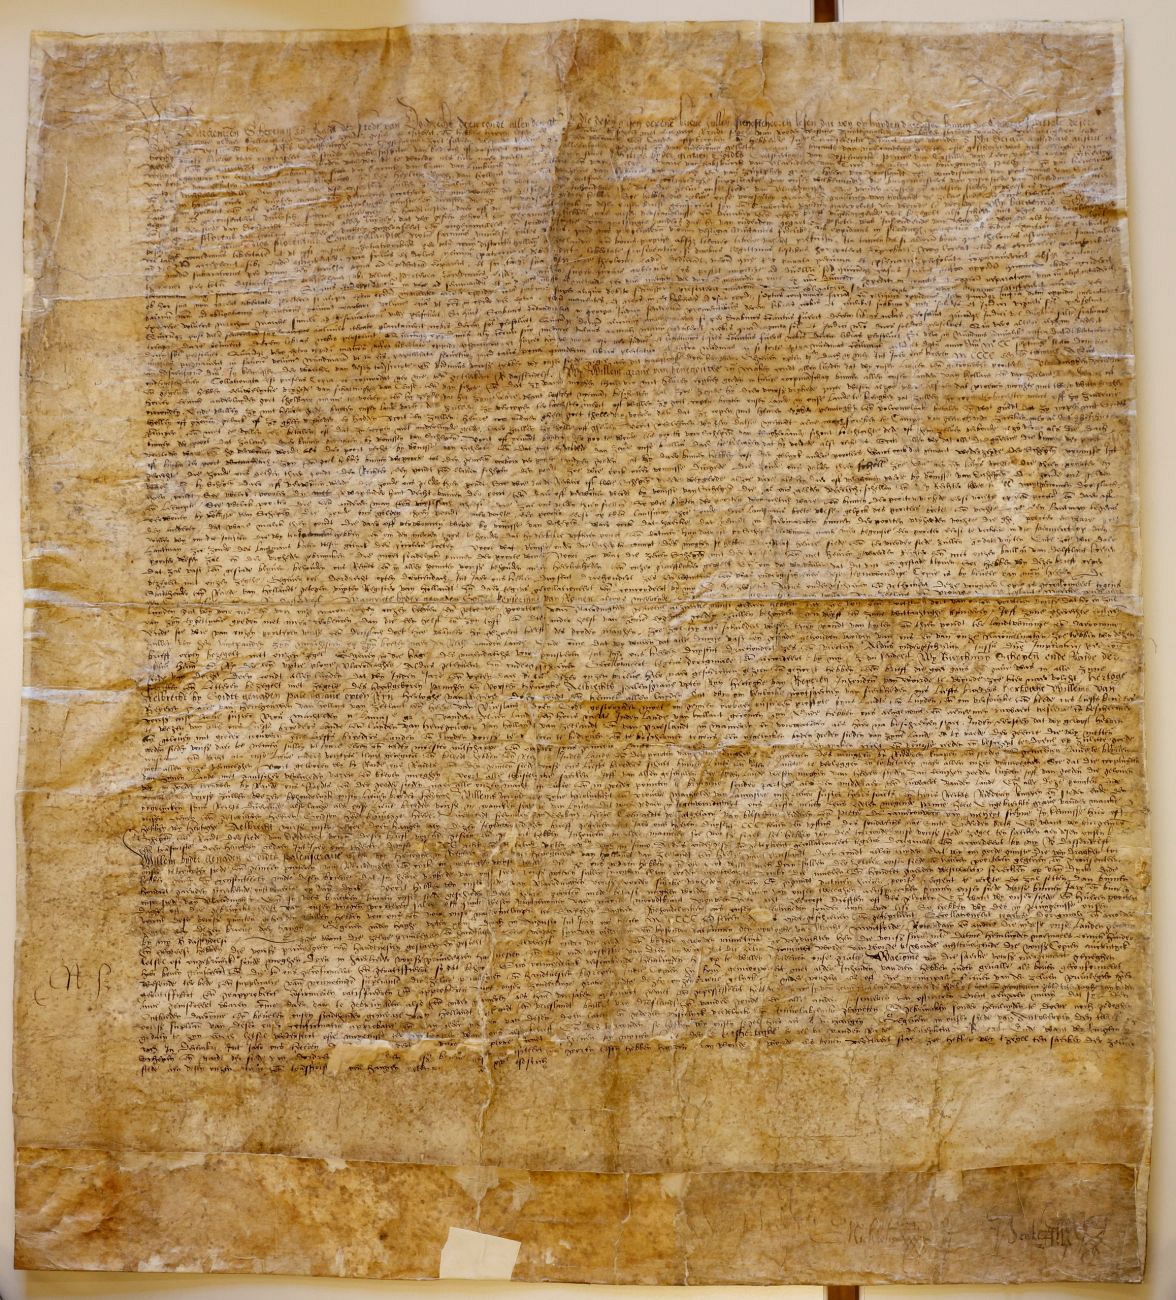 Unieke documenten uit de kluis voor viering 750 jaar stadsrechten